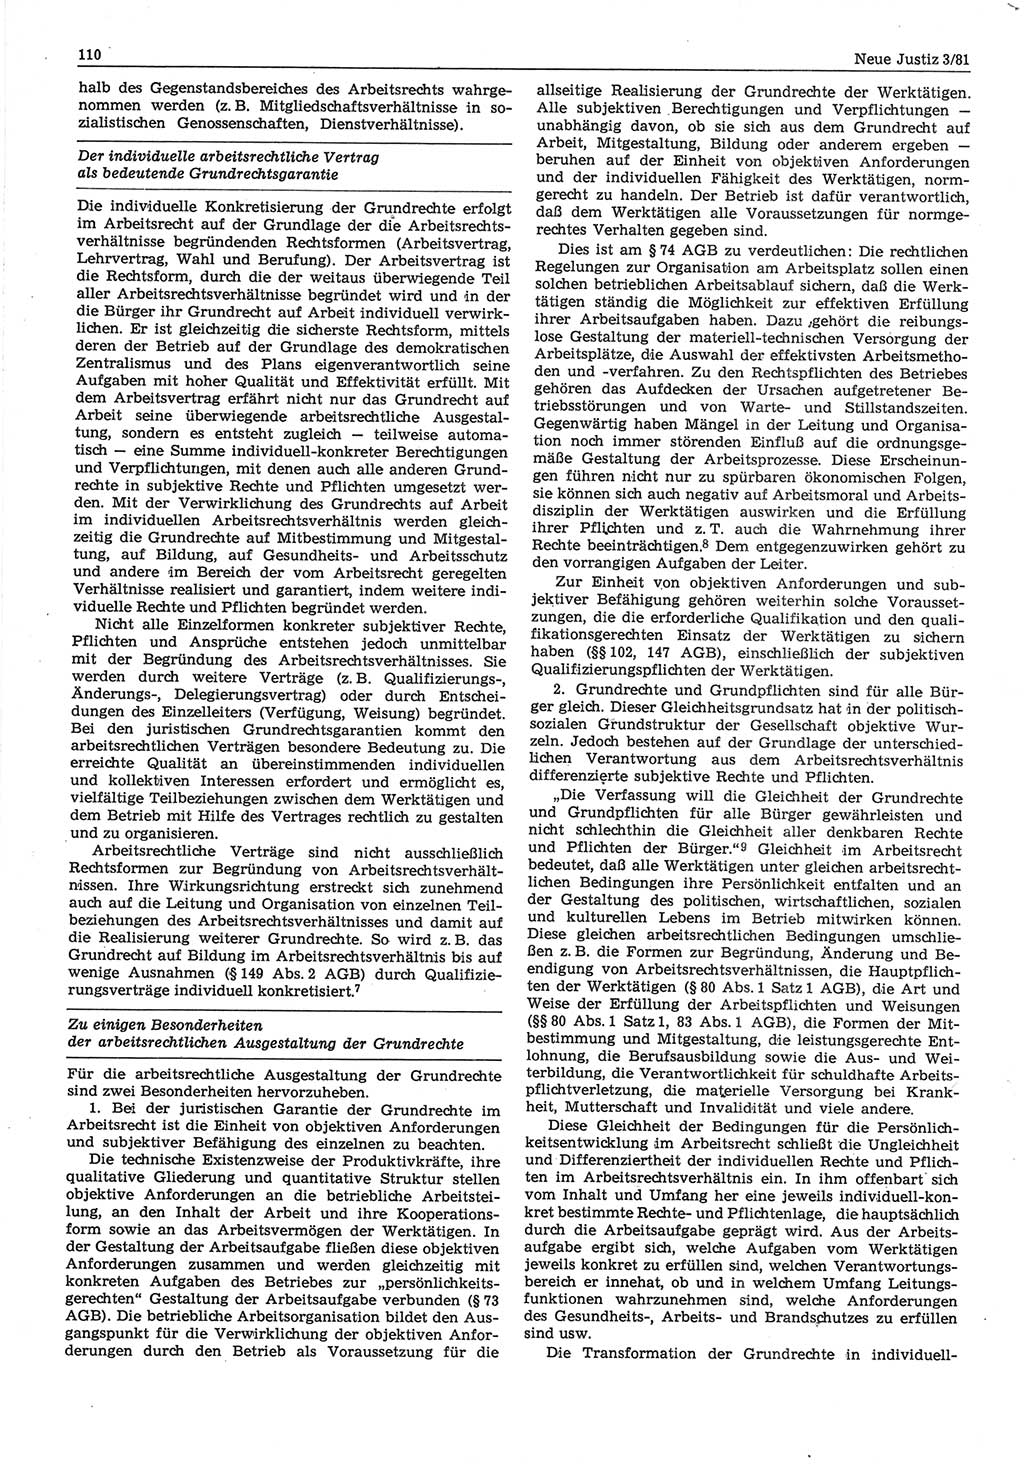 Neue Justiz (NJ), Zeitschrift für sozialistisches Recht und Gesetzlichkeit [Deutsche Demokratische Republik (DDR)], 35. Jahrgang 1981, Seite 110 (NJ DDR 1981, S. 110)